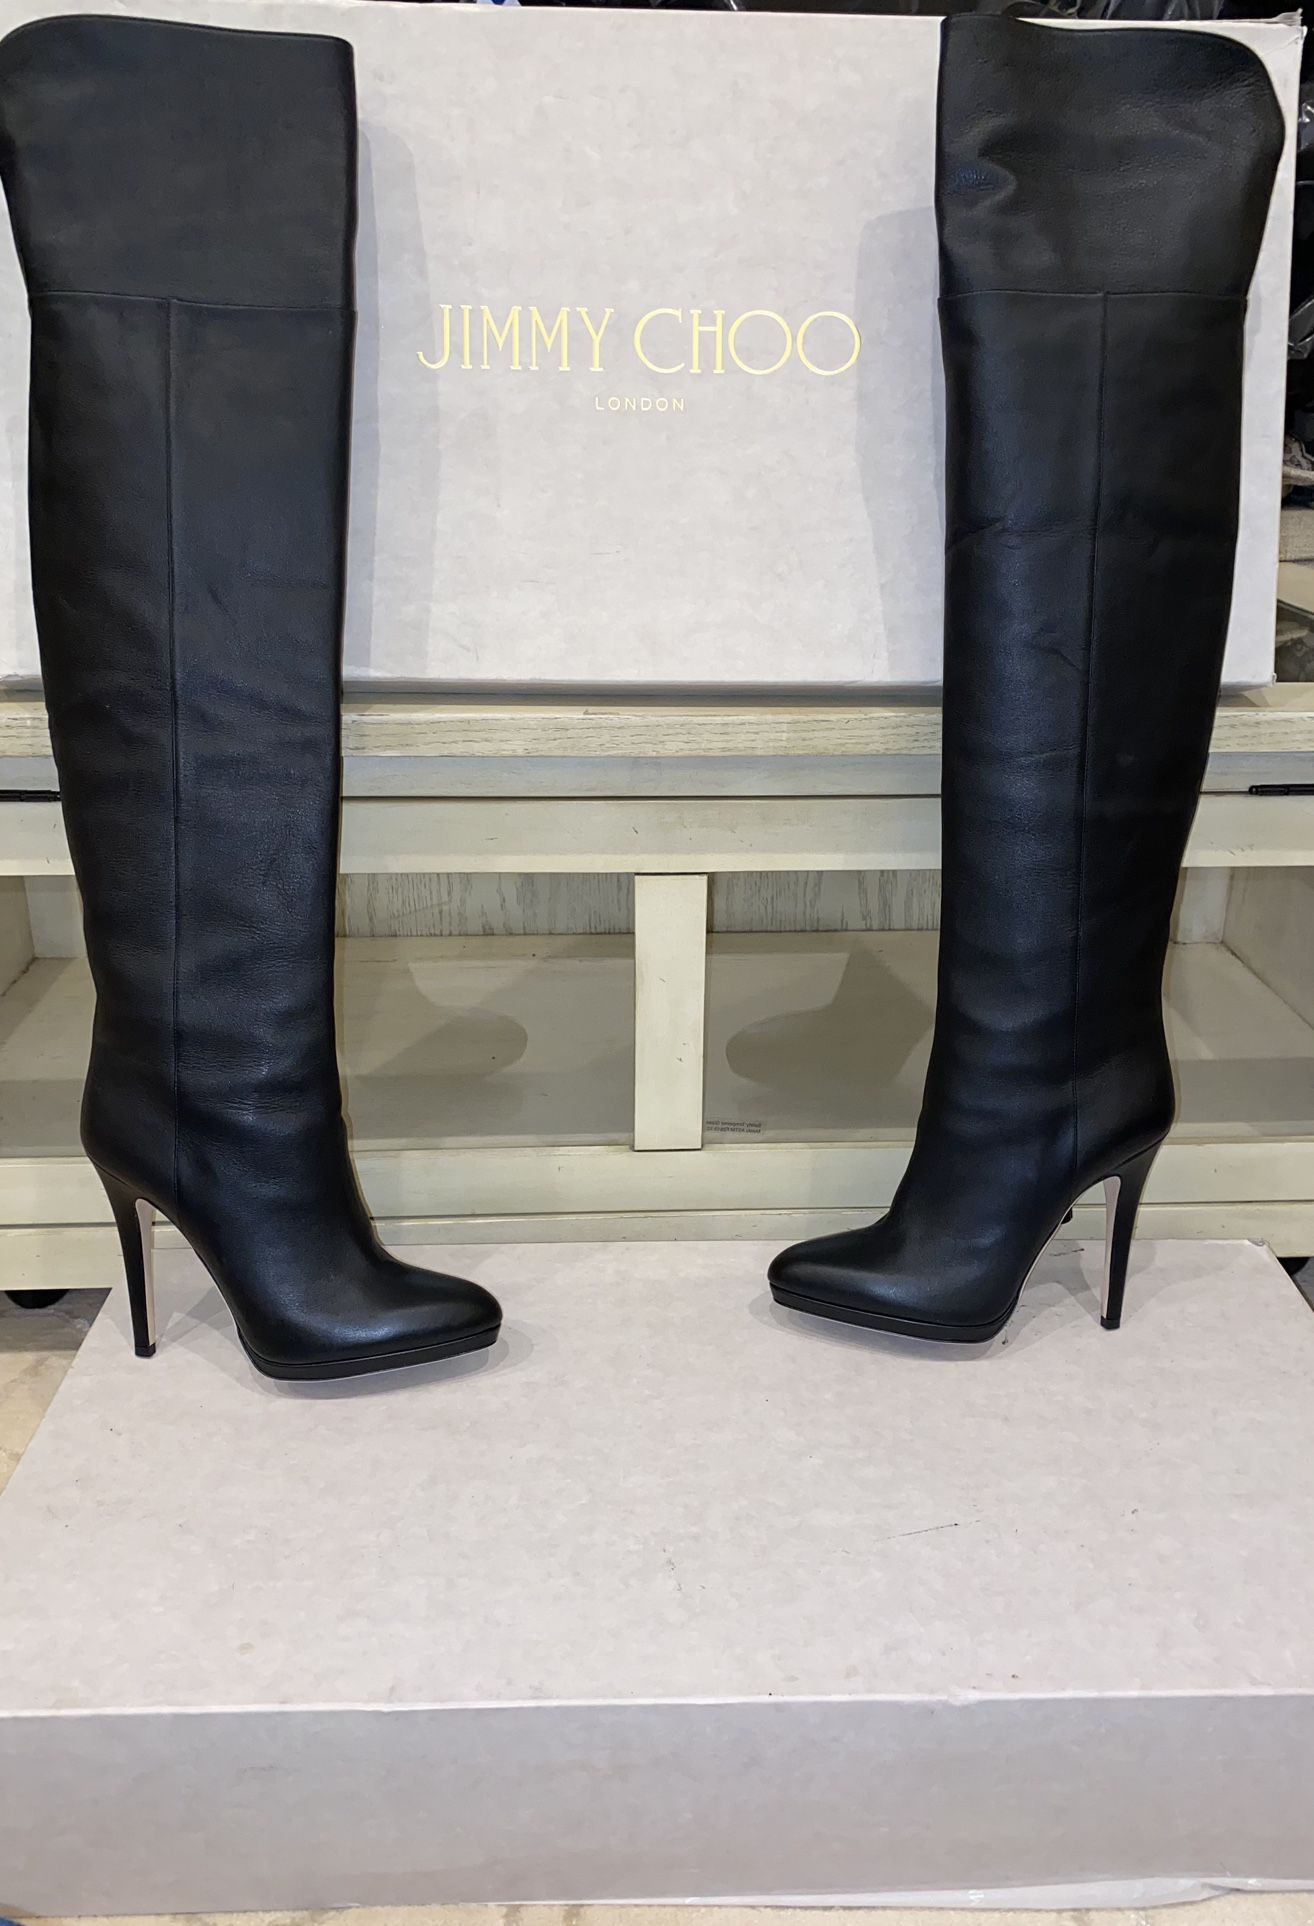 Jimmy Choo, Boots